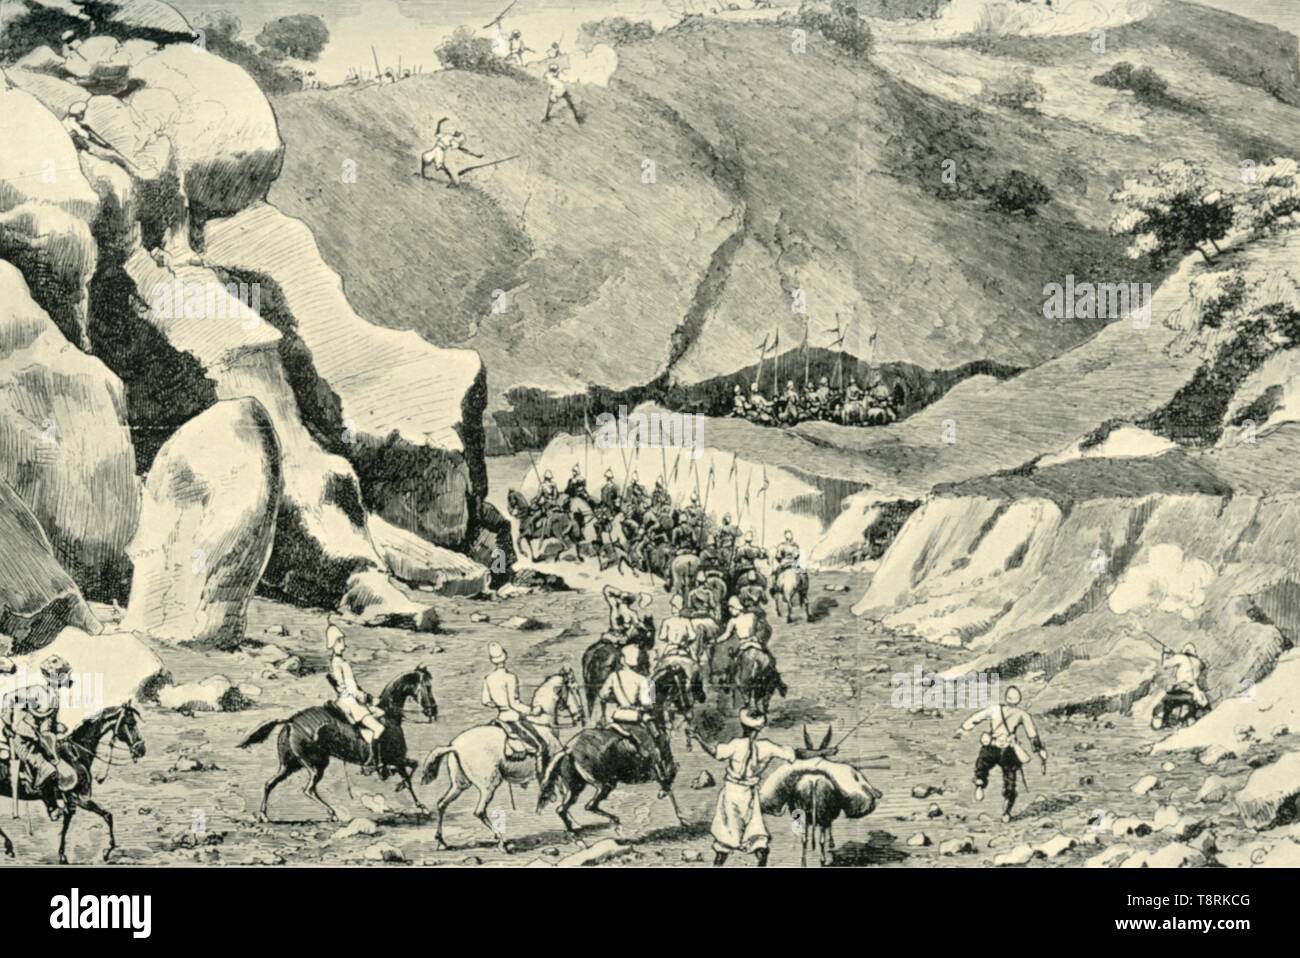 'General Roberts... von ghilzais in der Shutargardan Pass, 27. September 1879' angegriffen, (1901). Schöpfer: Unbekannt. Stockfoto